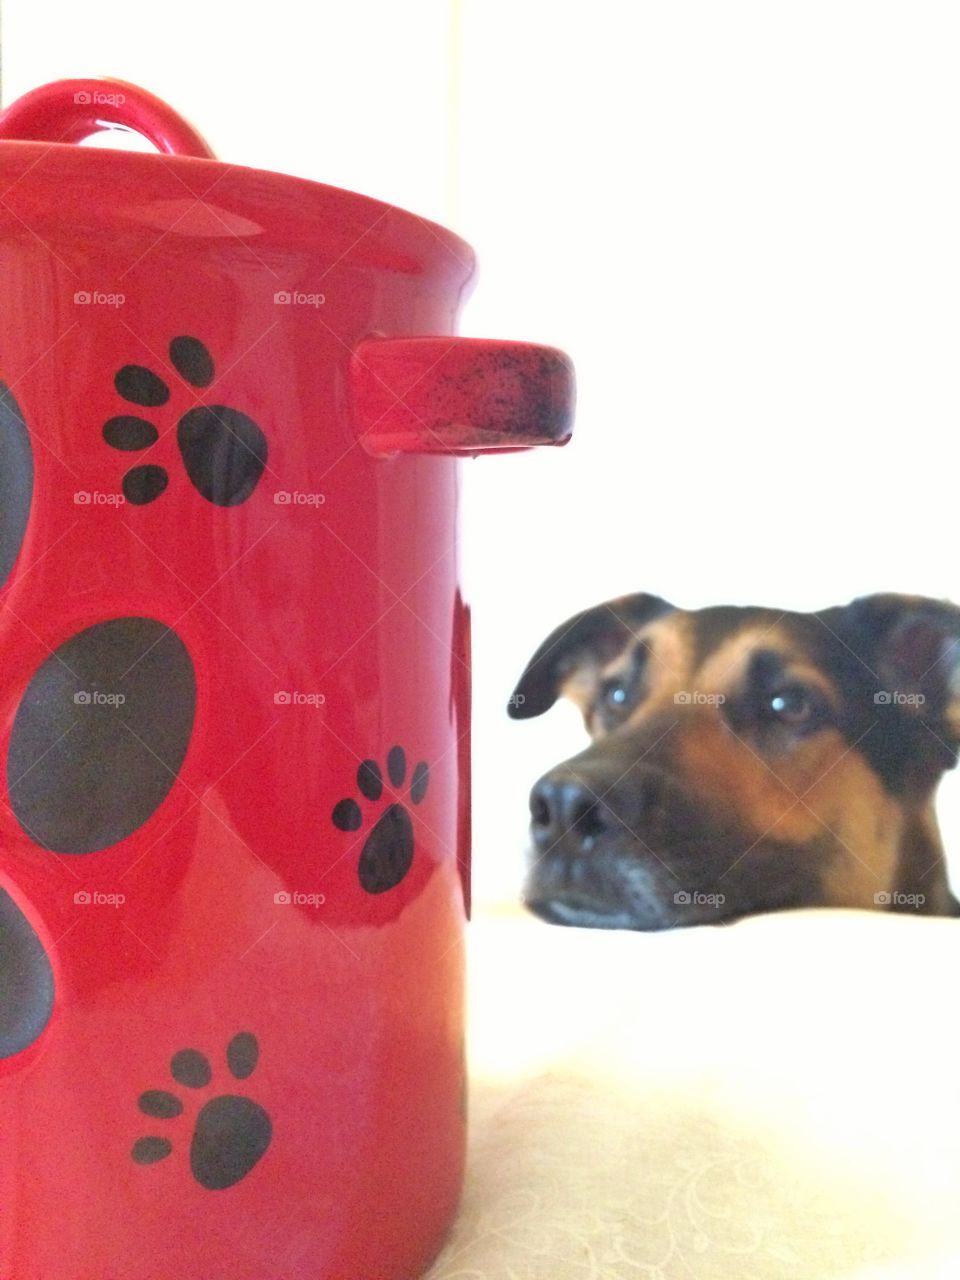 Dog looking at cookie jar